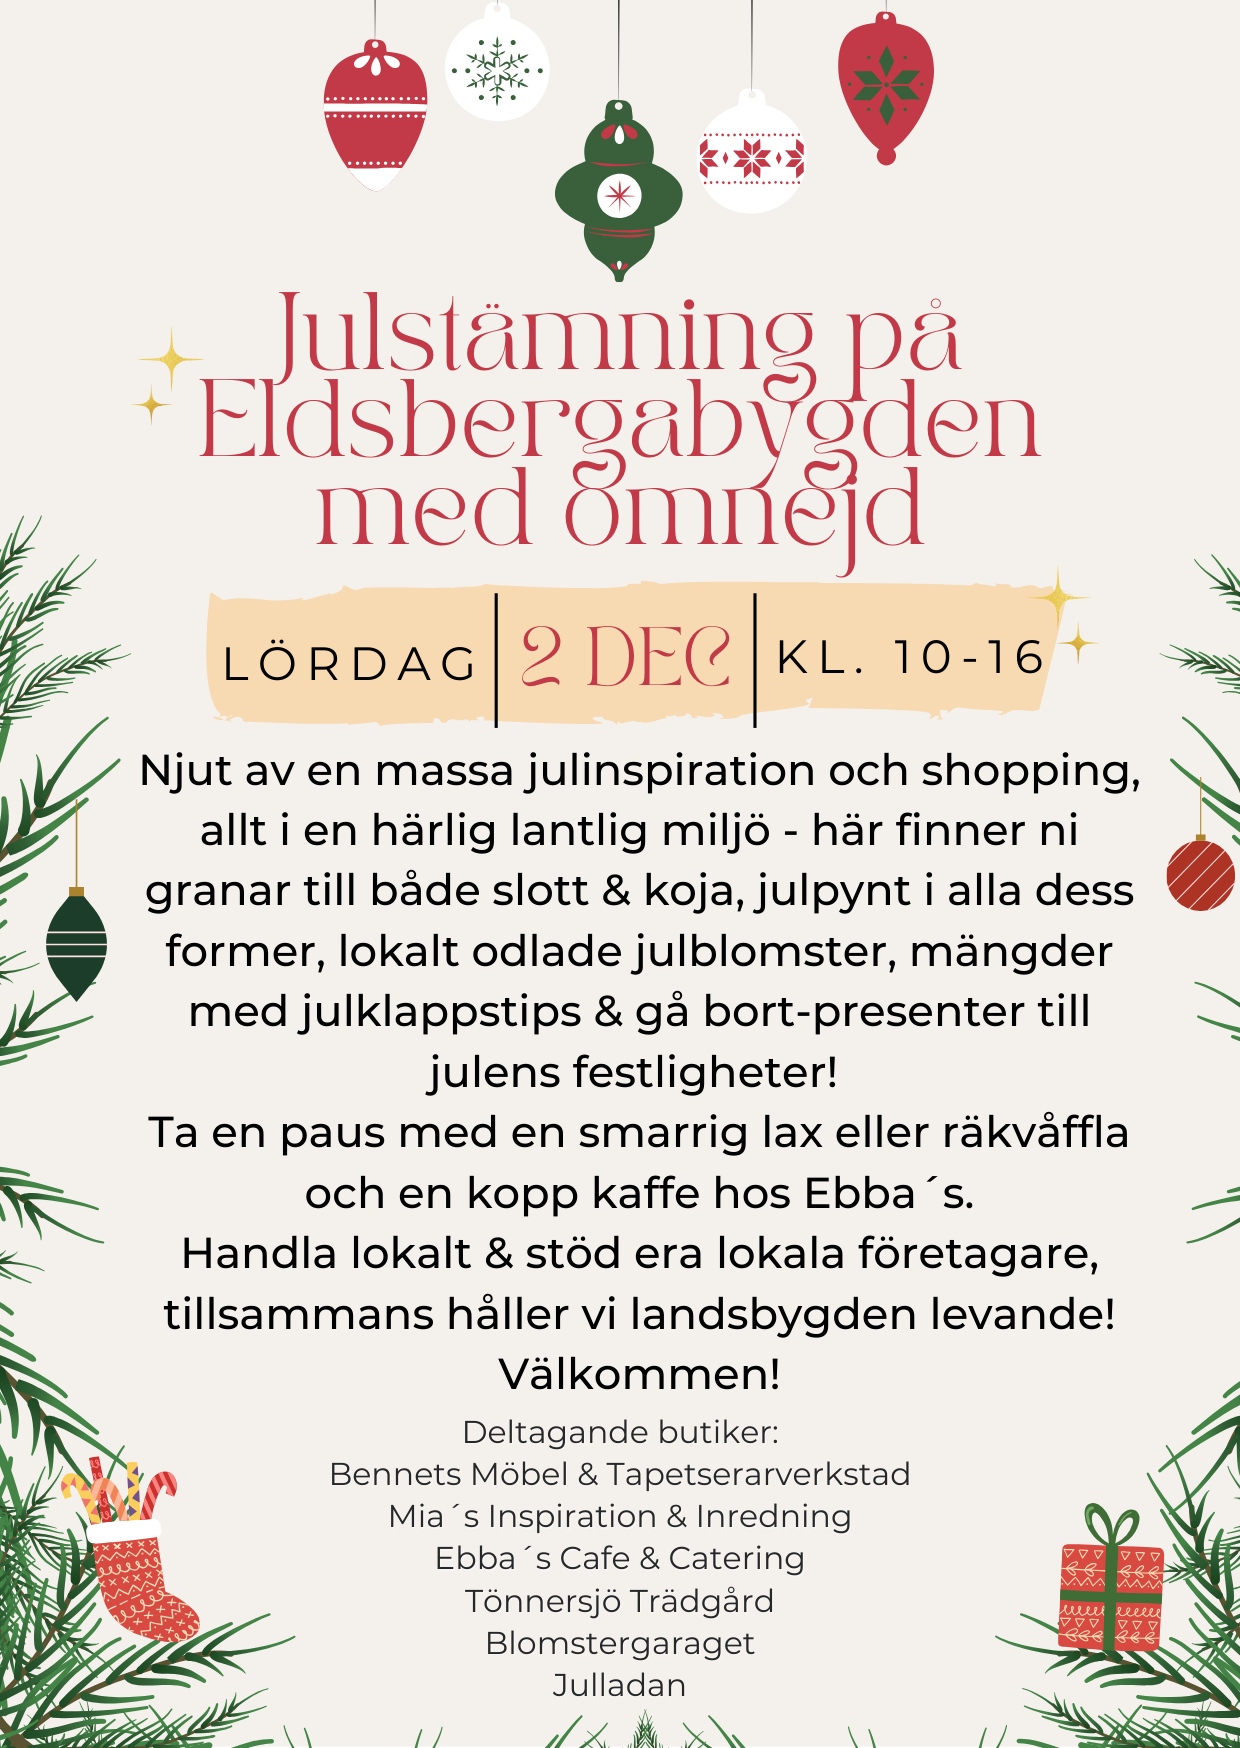 Bildbeskrivning saknas för evenemanget: Julstämning på Eldsbergabygden med omnejd